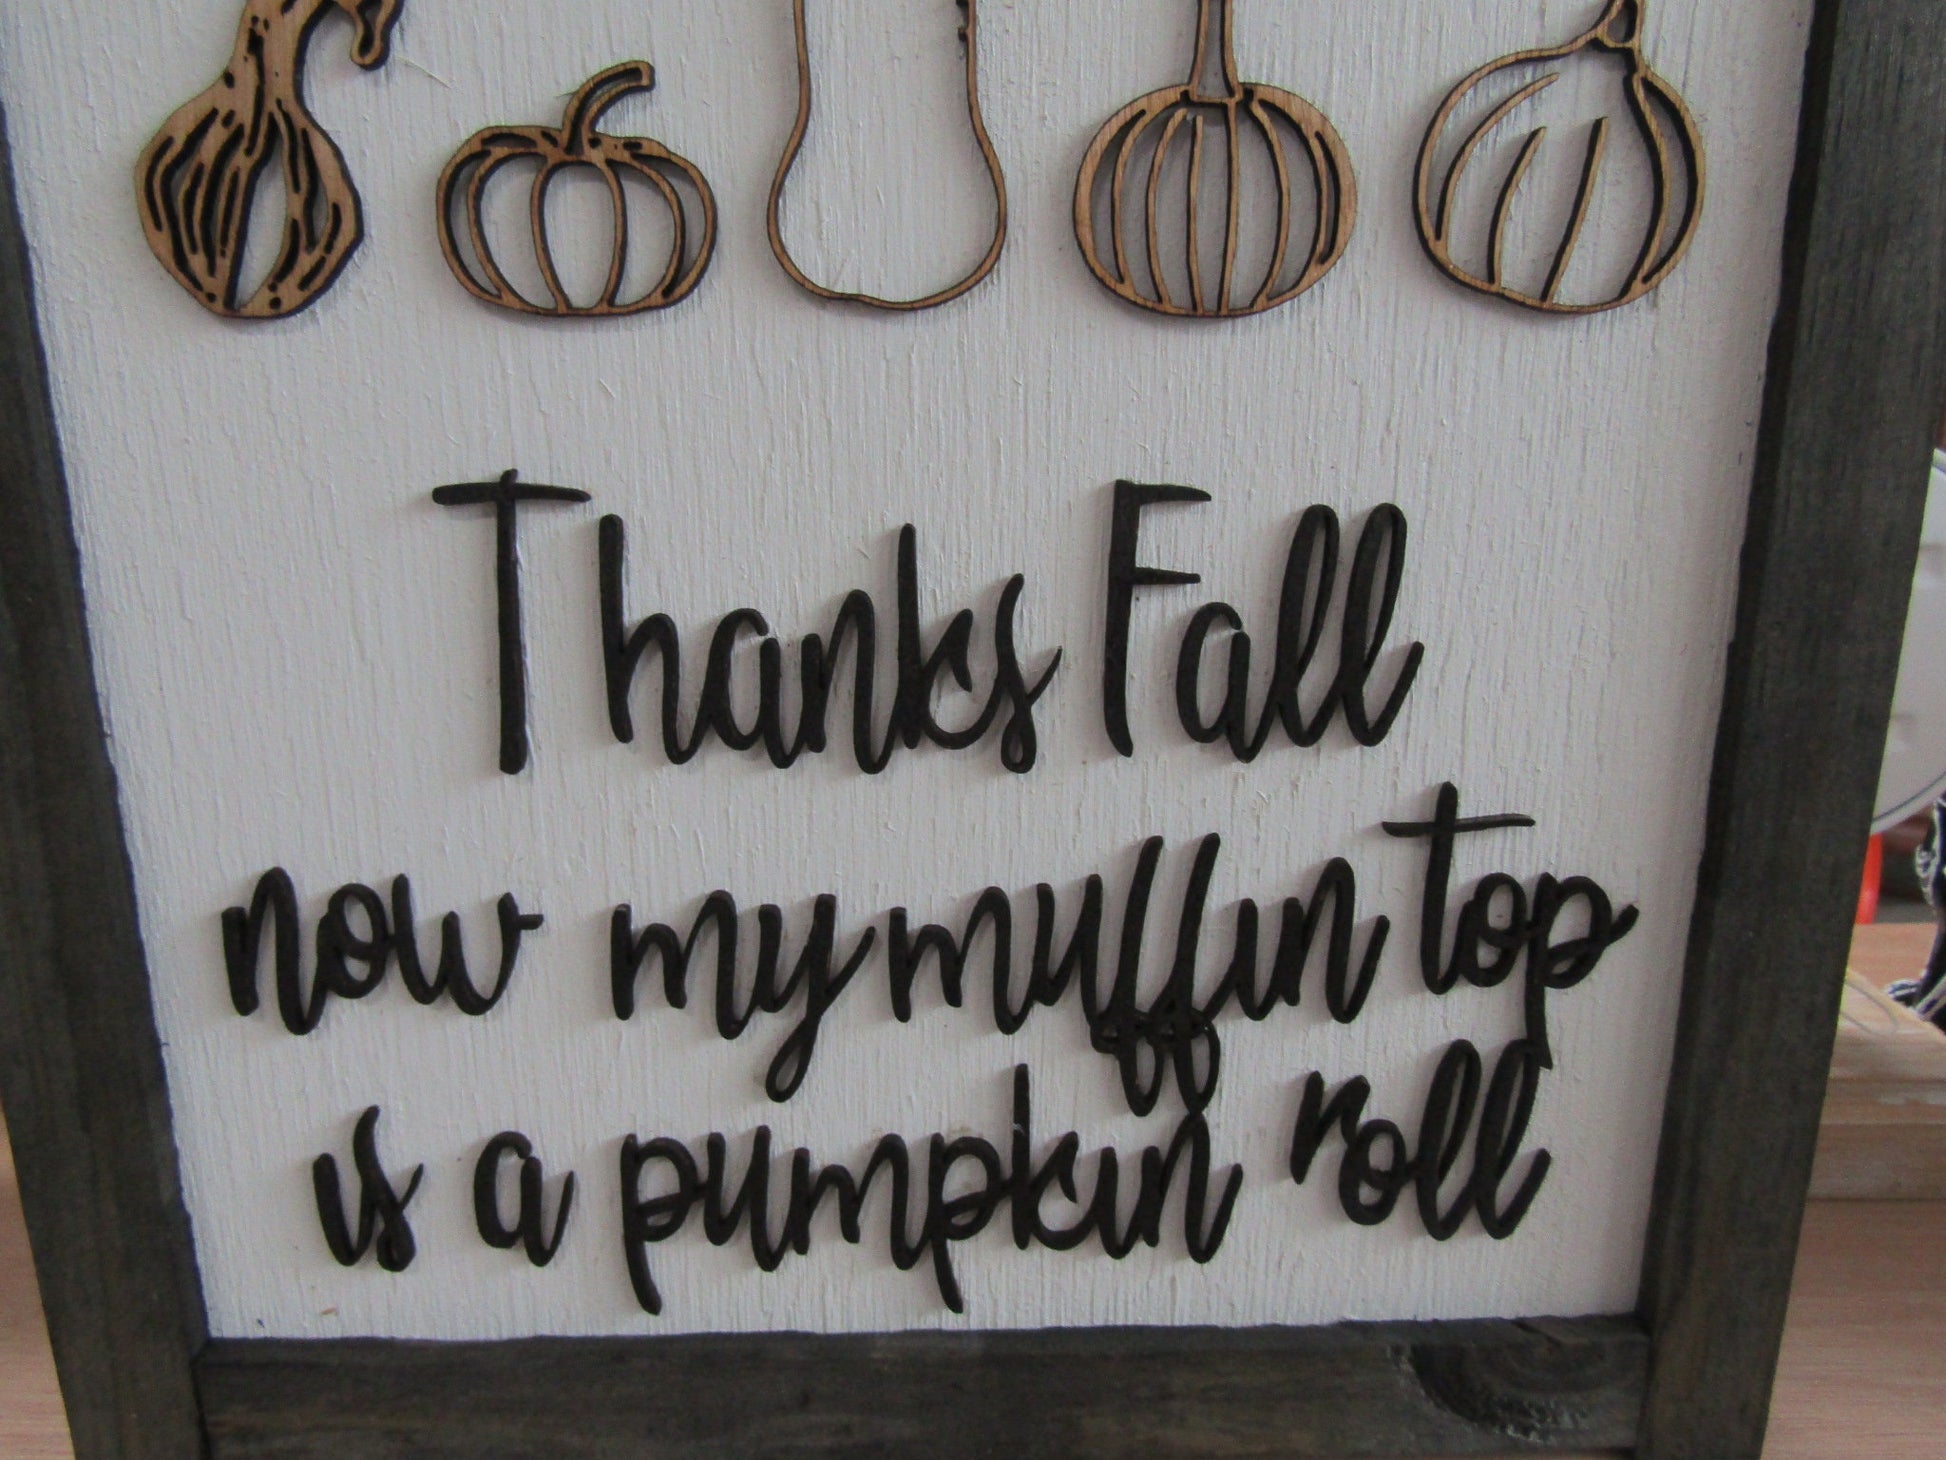 Thanks Fall Goofy Muffin Top Pumpkin Roll Pumpkins Gourds Autumn Handmade Decor Wall Hanging Funny Sarcastic Joke Seasonal Wooden Sign